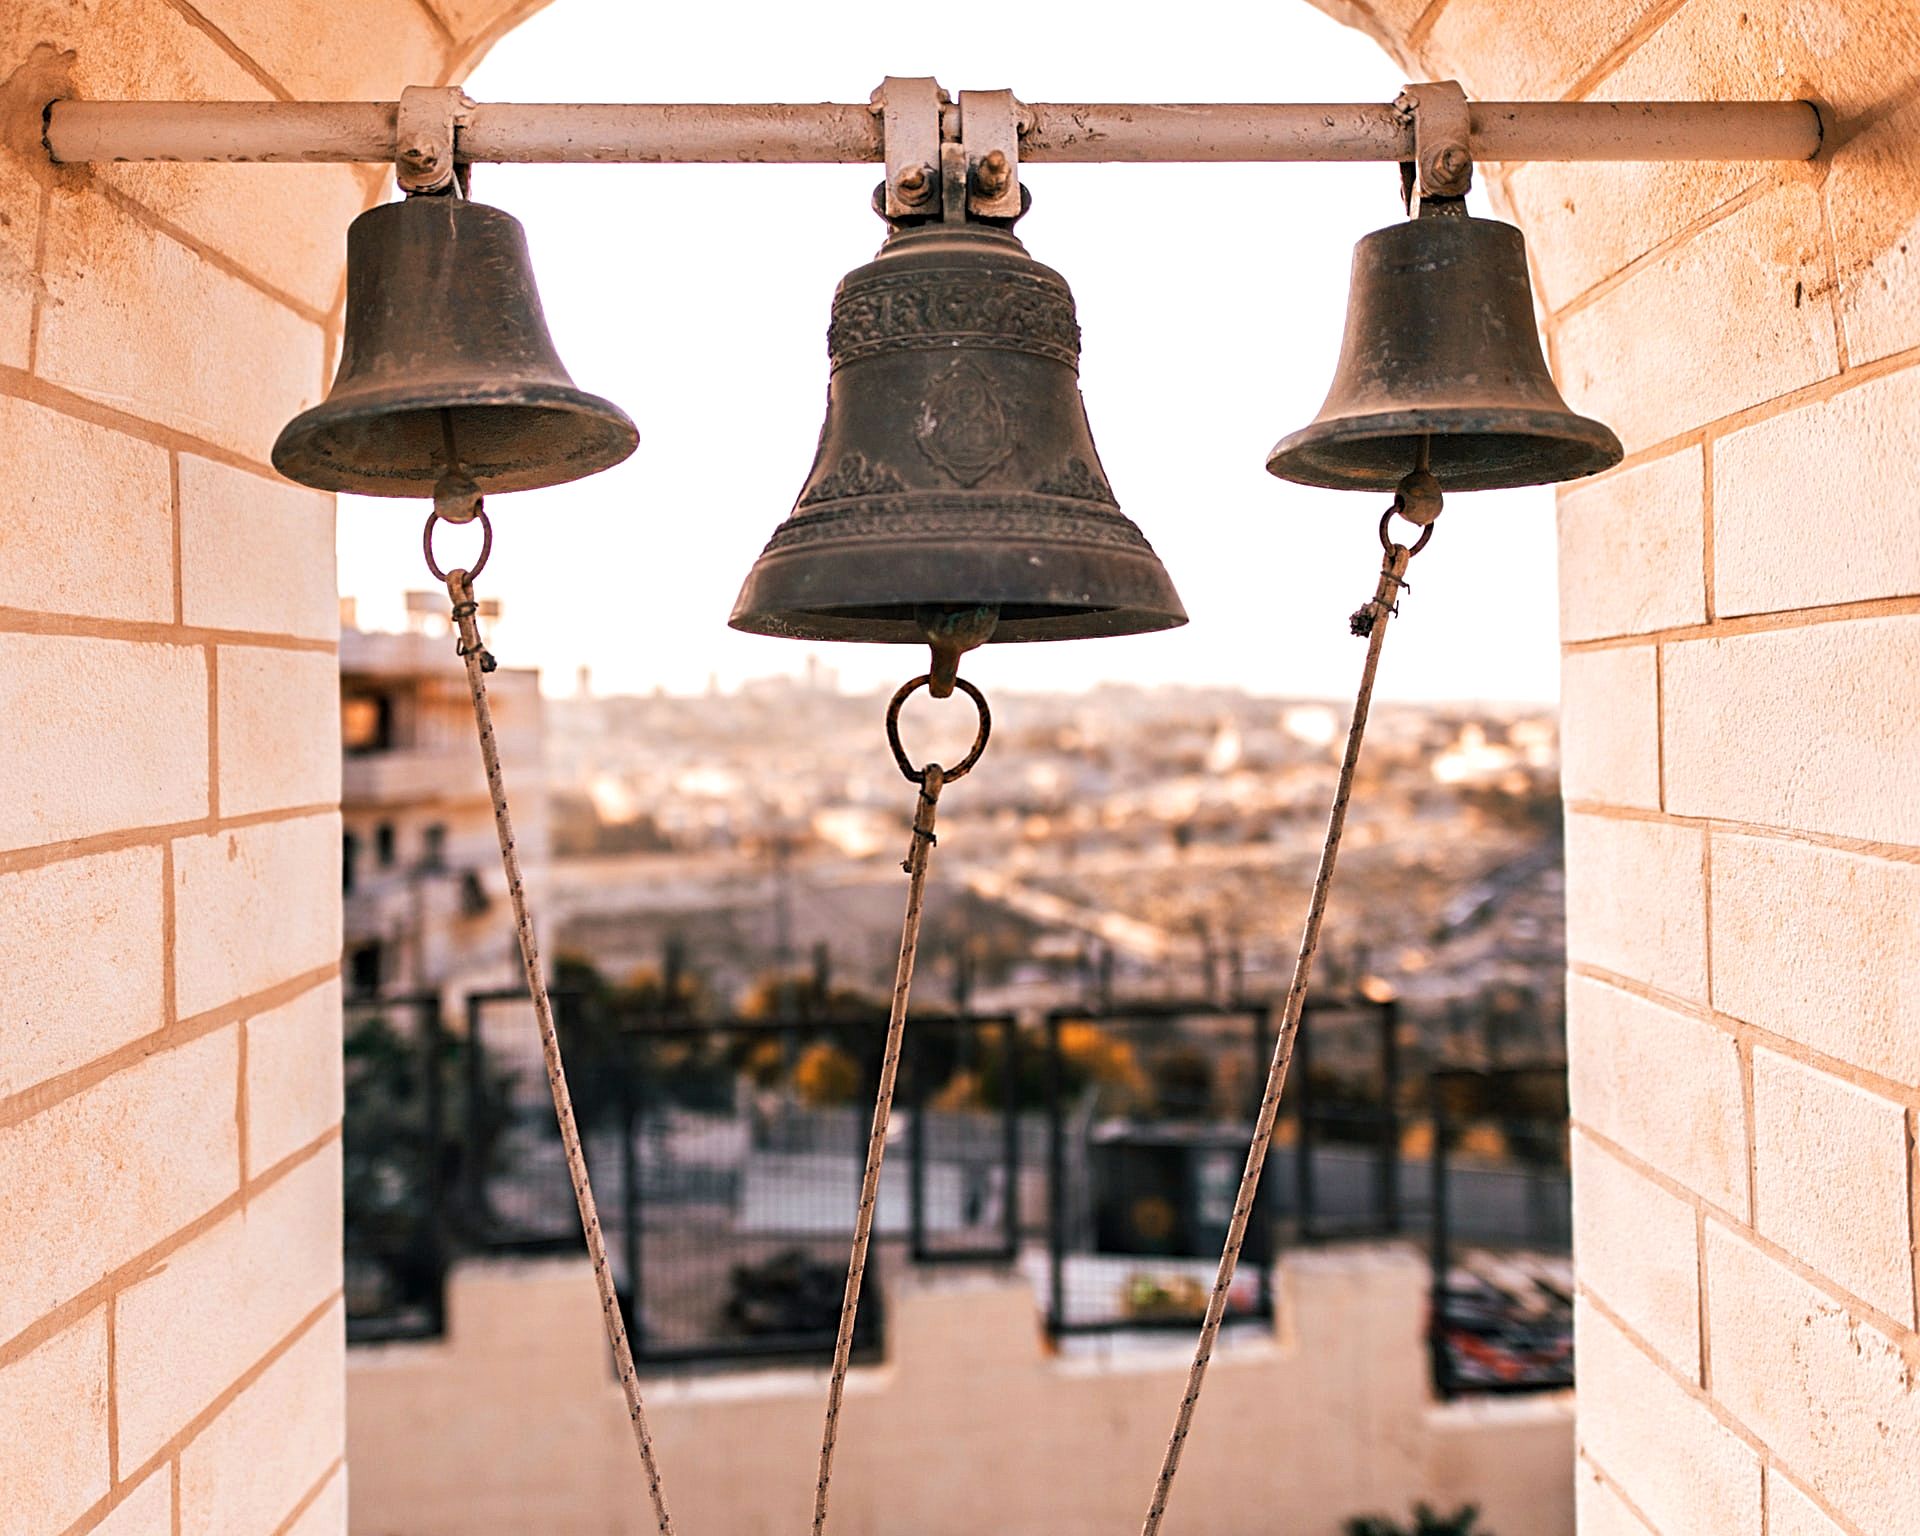 Cathedral bells, Mount of Olives, Jerusalem